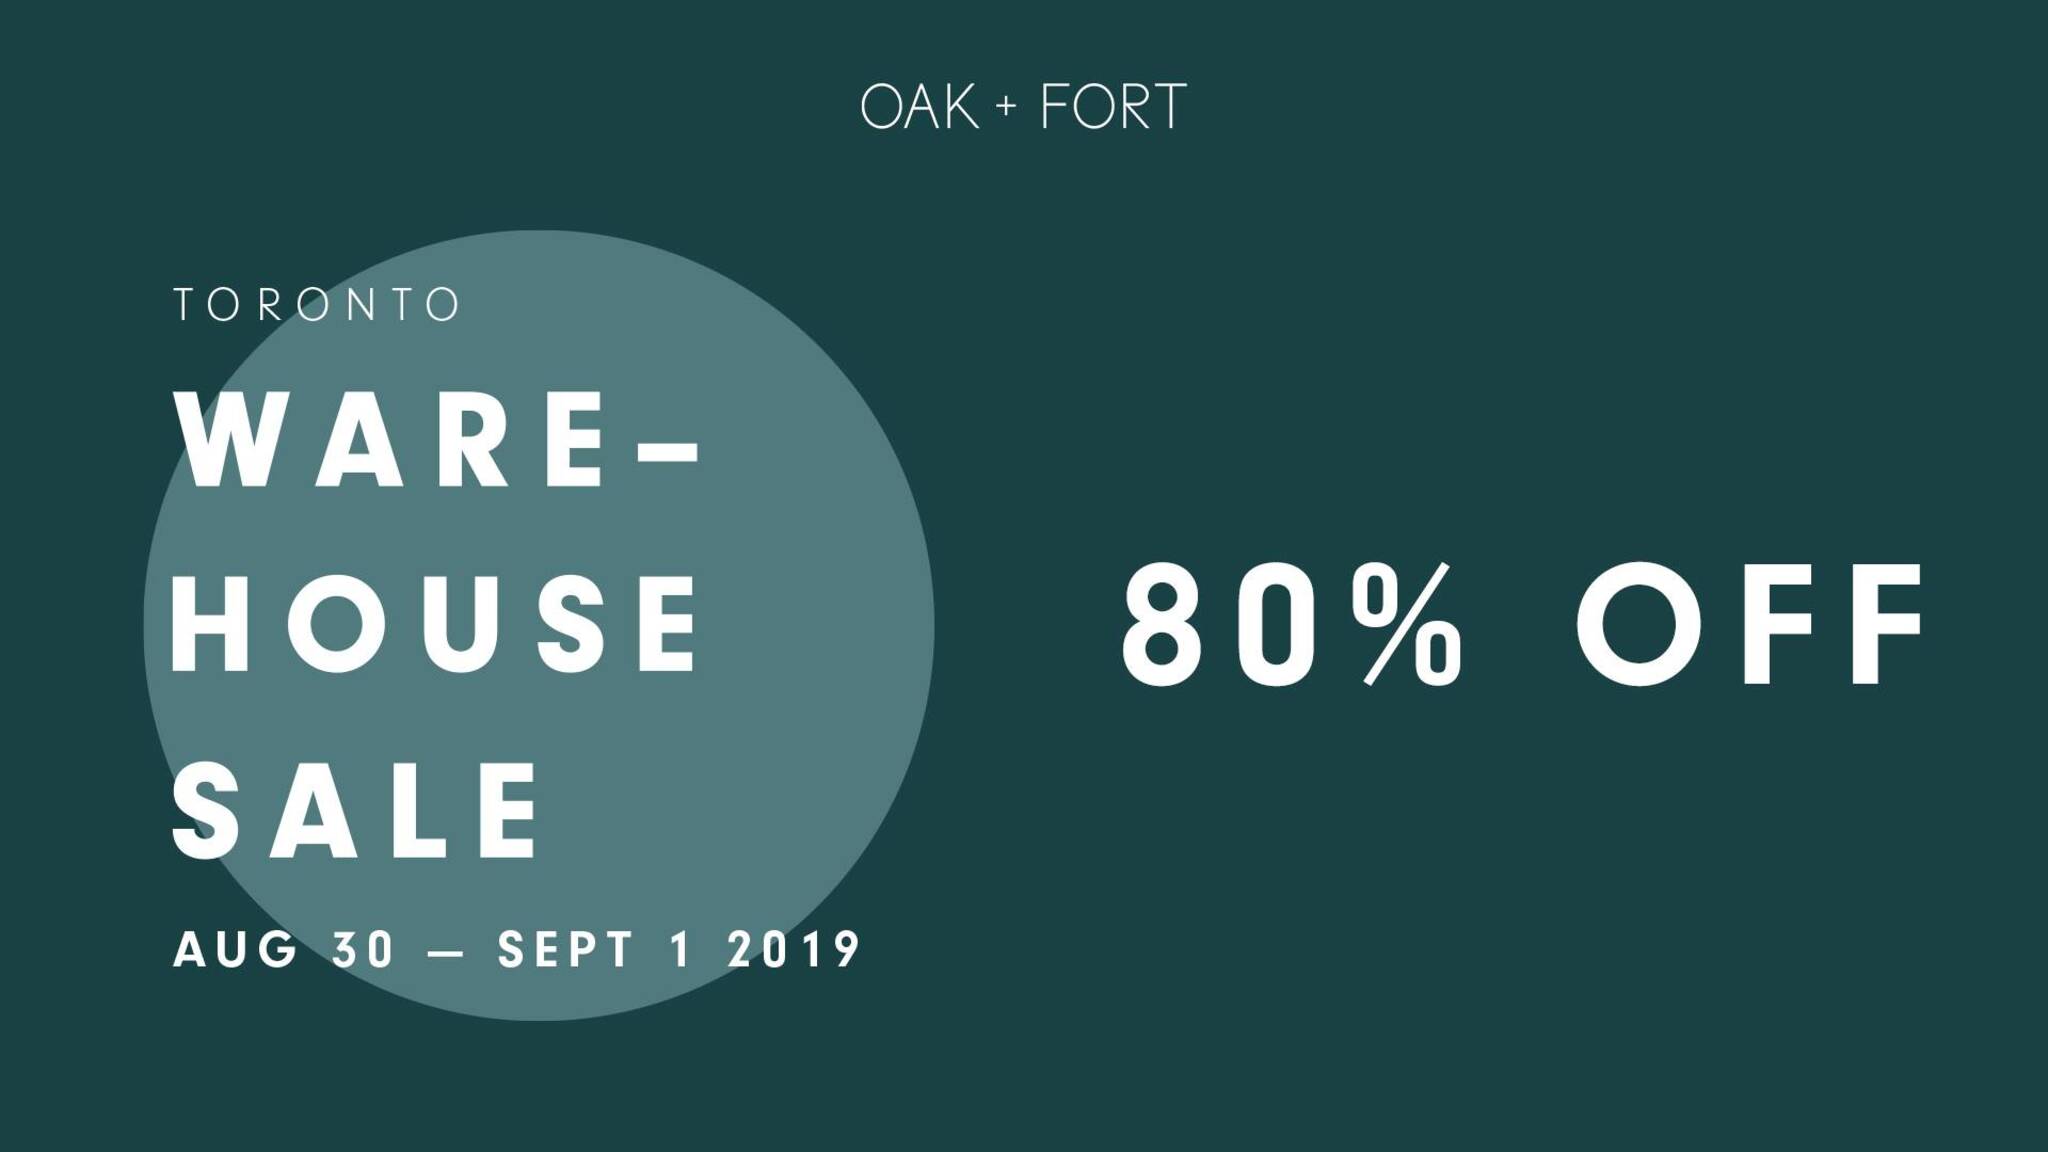 Oak + Fort Is Having A Massive Warehouse Sale Near Toronto